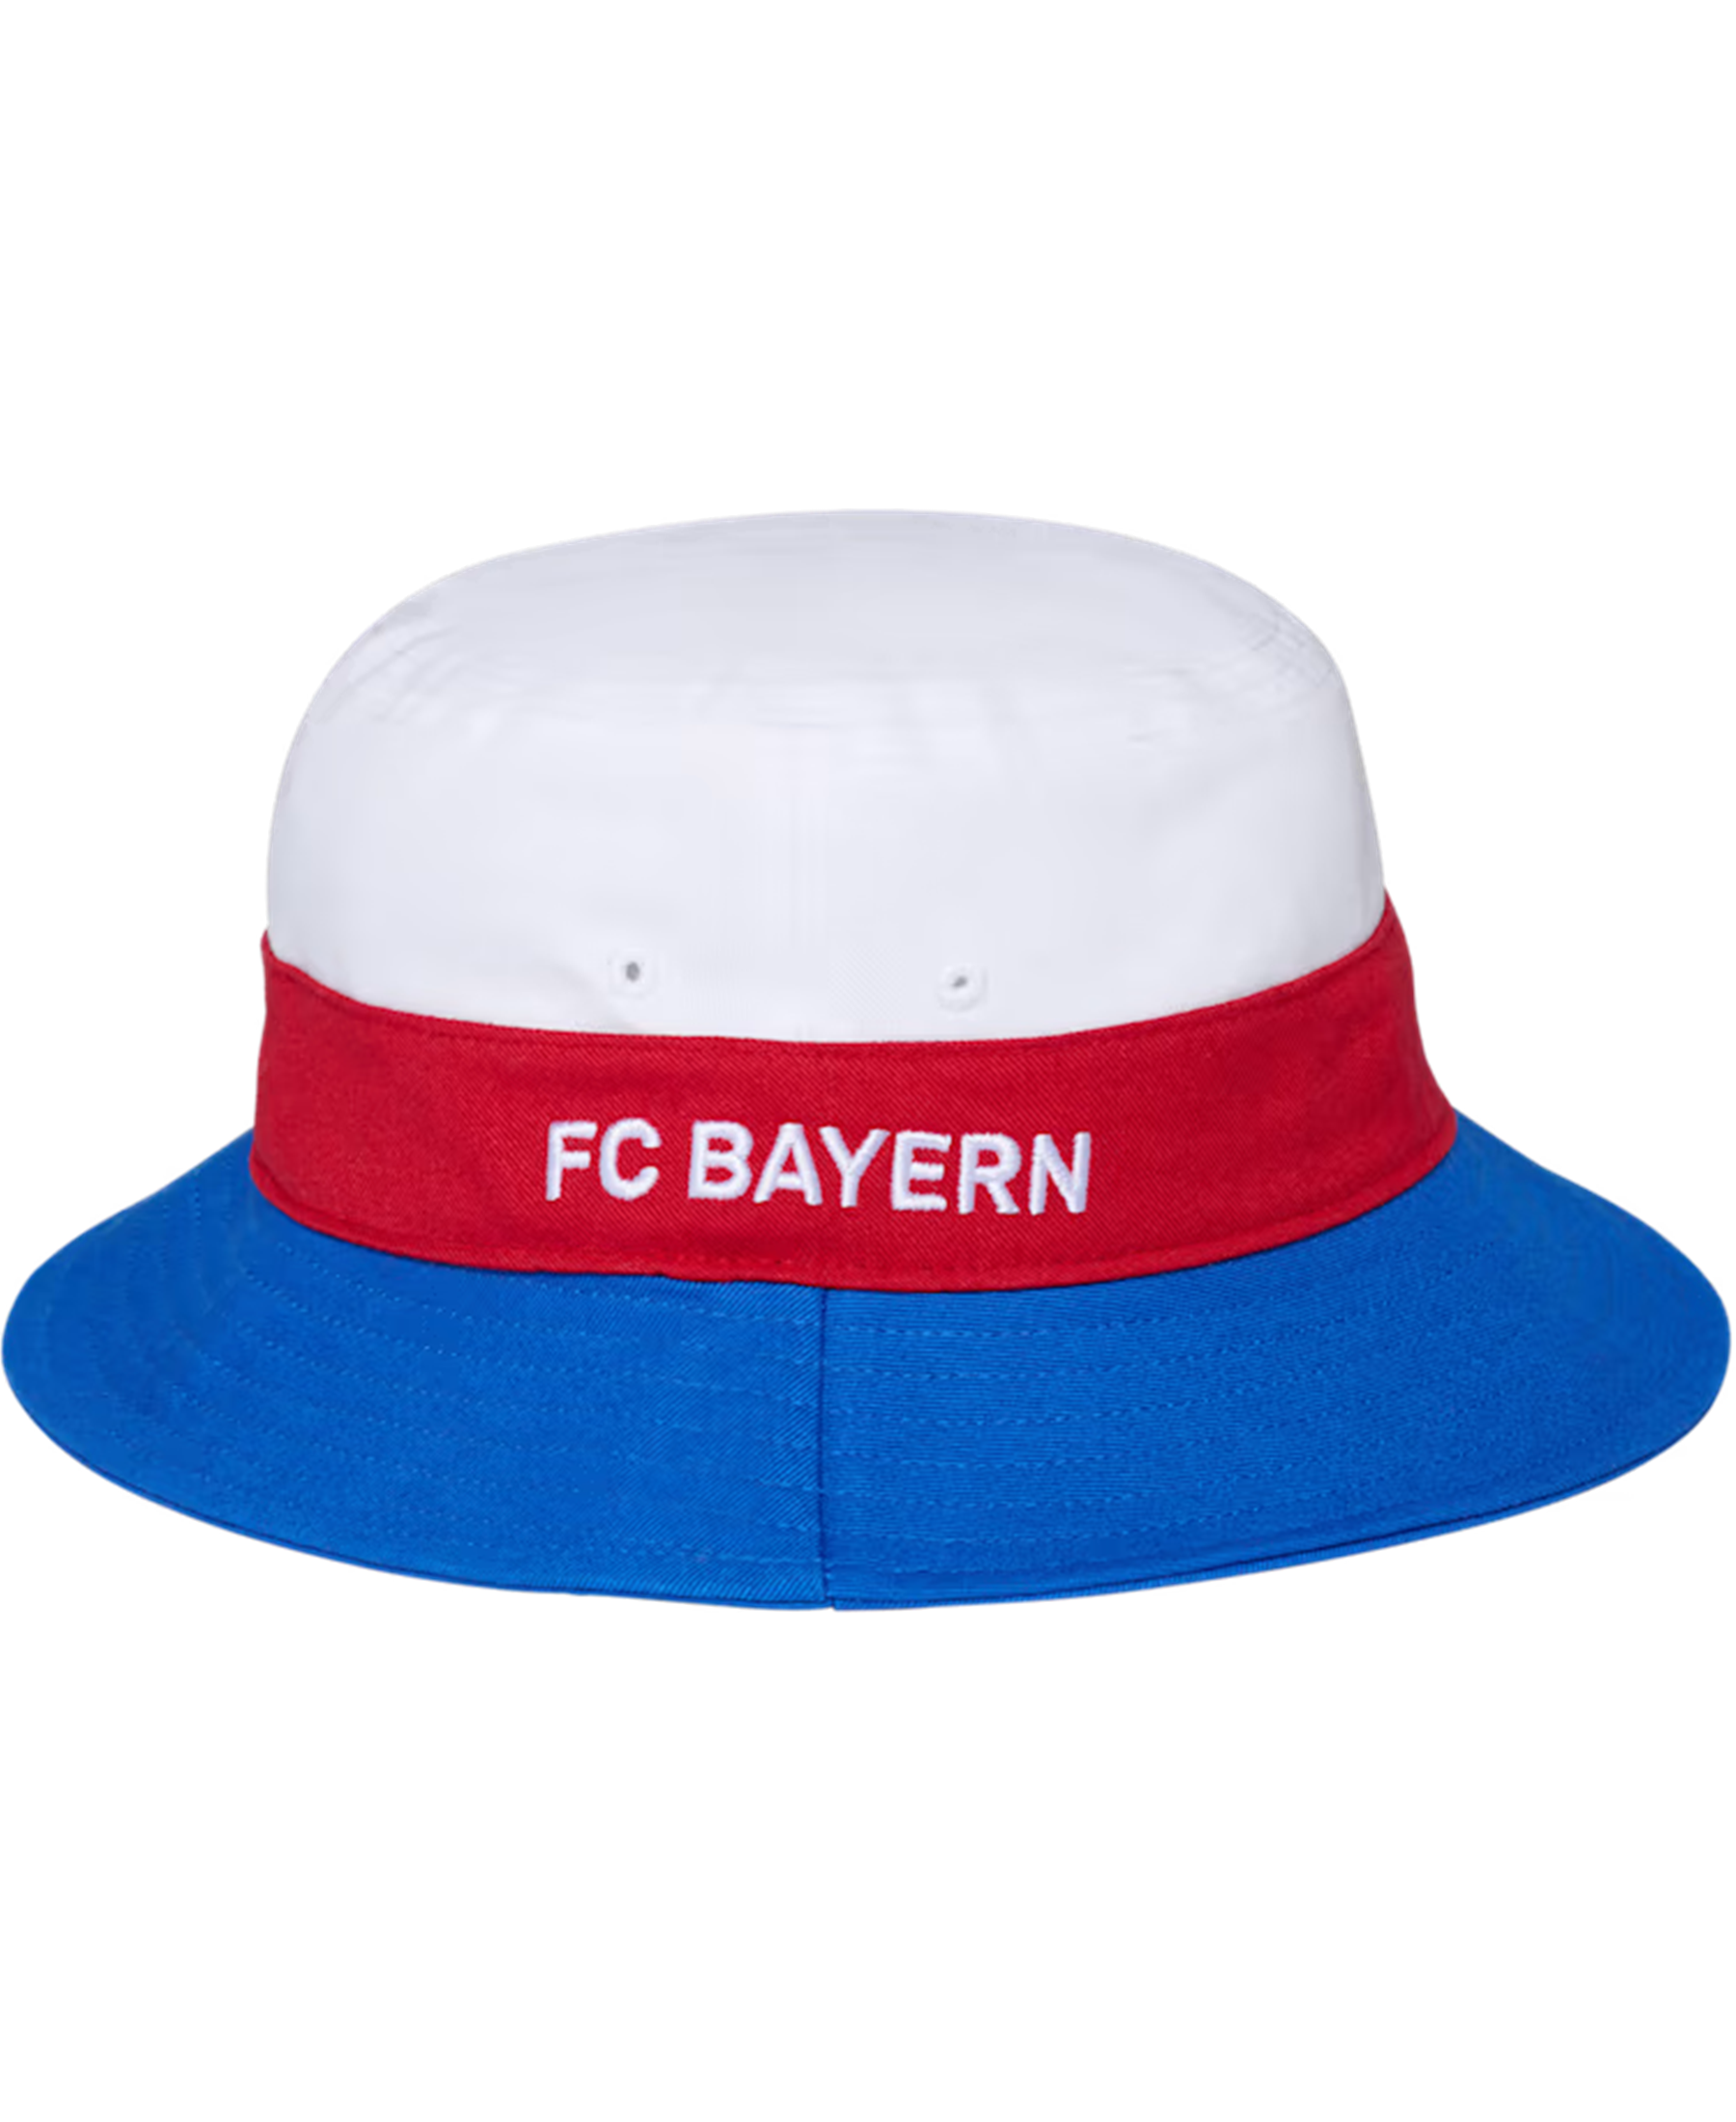 Der FC Bayern München Fischerhut (32602) ist der ideale Begleiter für sonnige Tage. Mit dem Vereinslogo zeigst du deine Zugehörigkeit zum Team stolz. Hol dir diesen trendigen Hut bei SHOP4TEAMSPORT und genieße den Sommer im FCB-Style.